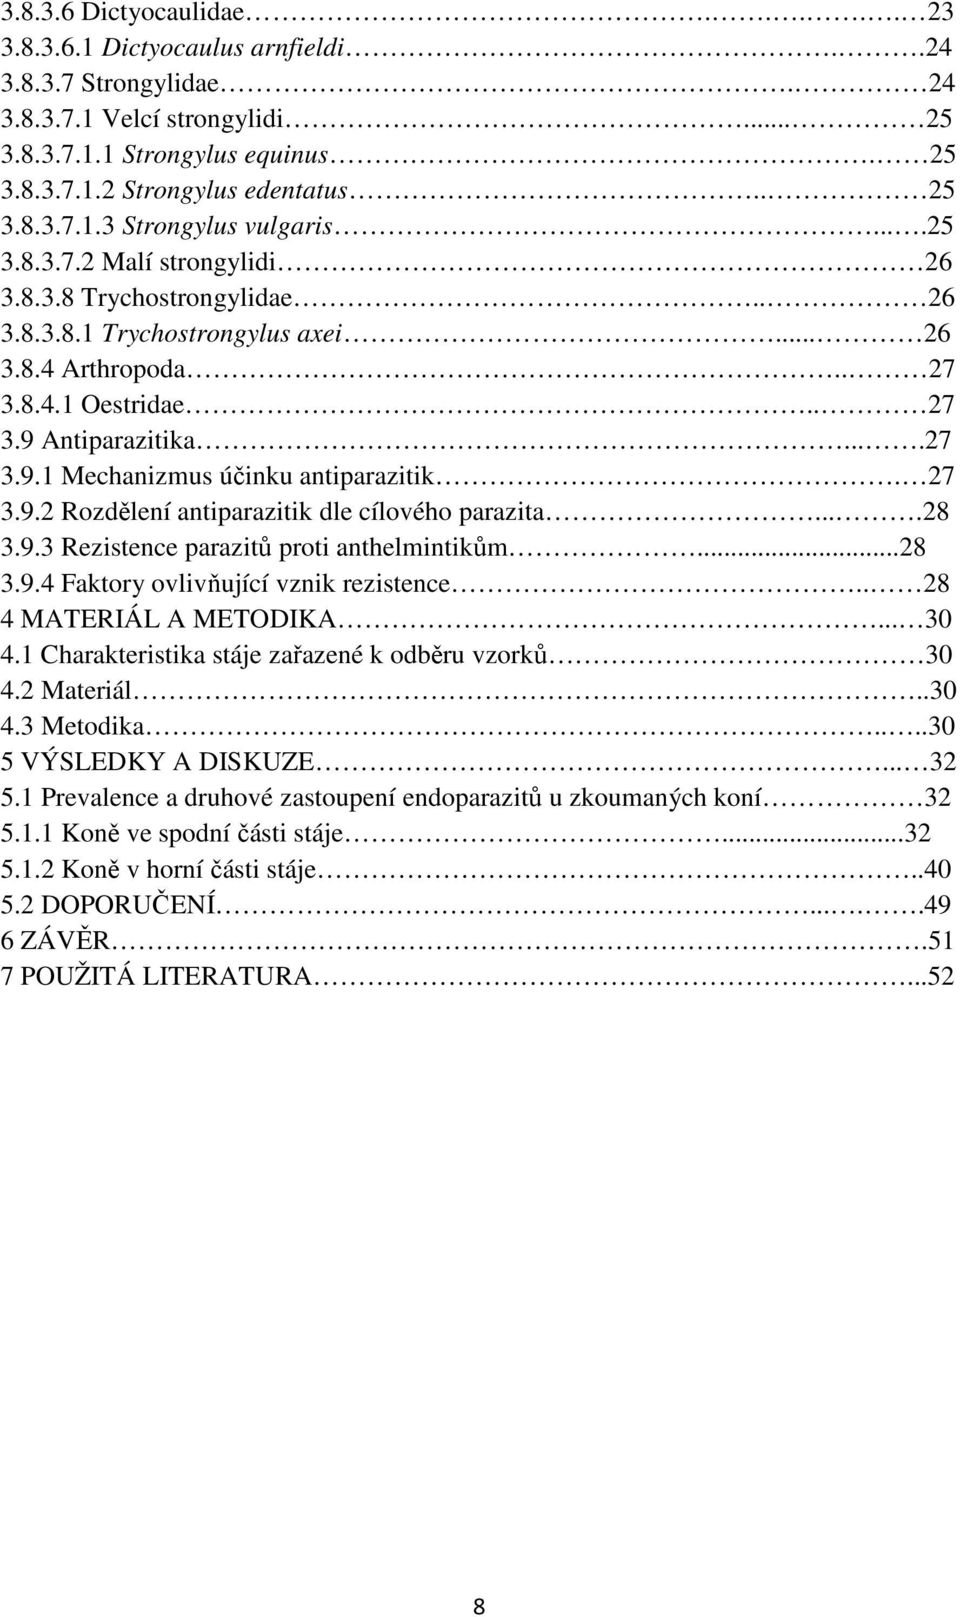 7 3.9. Rozdělení antiparazitik dle cílového parazita....8 3.9.3 Rezistence parazitů proti anthelmintikům...8 3.9. Faktory ovlivňující vznik rezistence.. 8 MATERIÁL A METODIKA... 3.1 Charakteristika stáje zařazené k odběru vzorků 3.